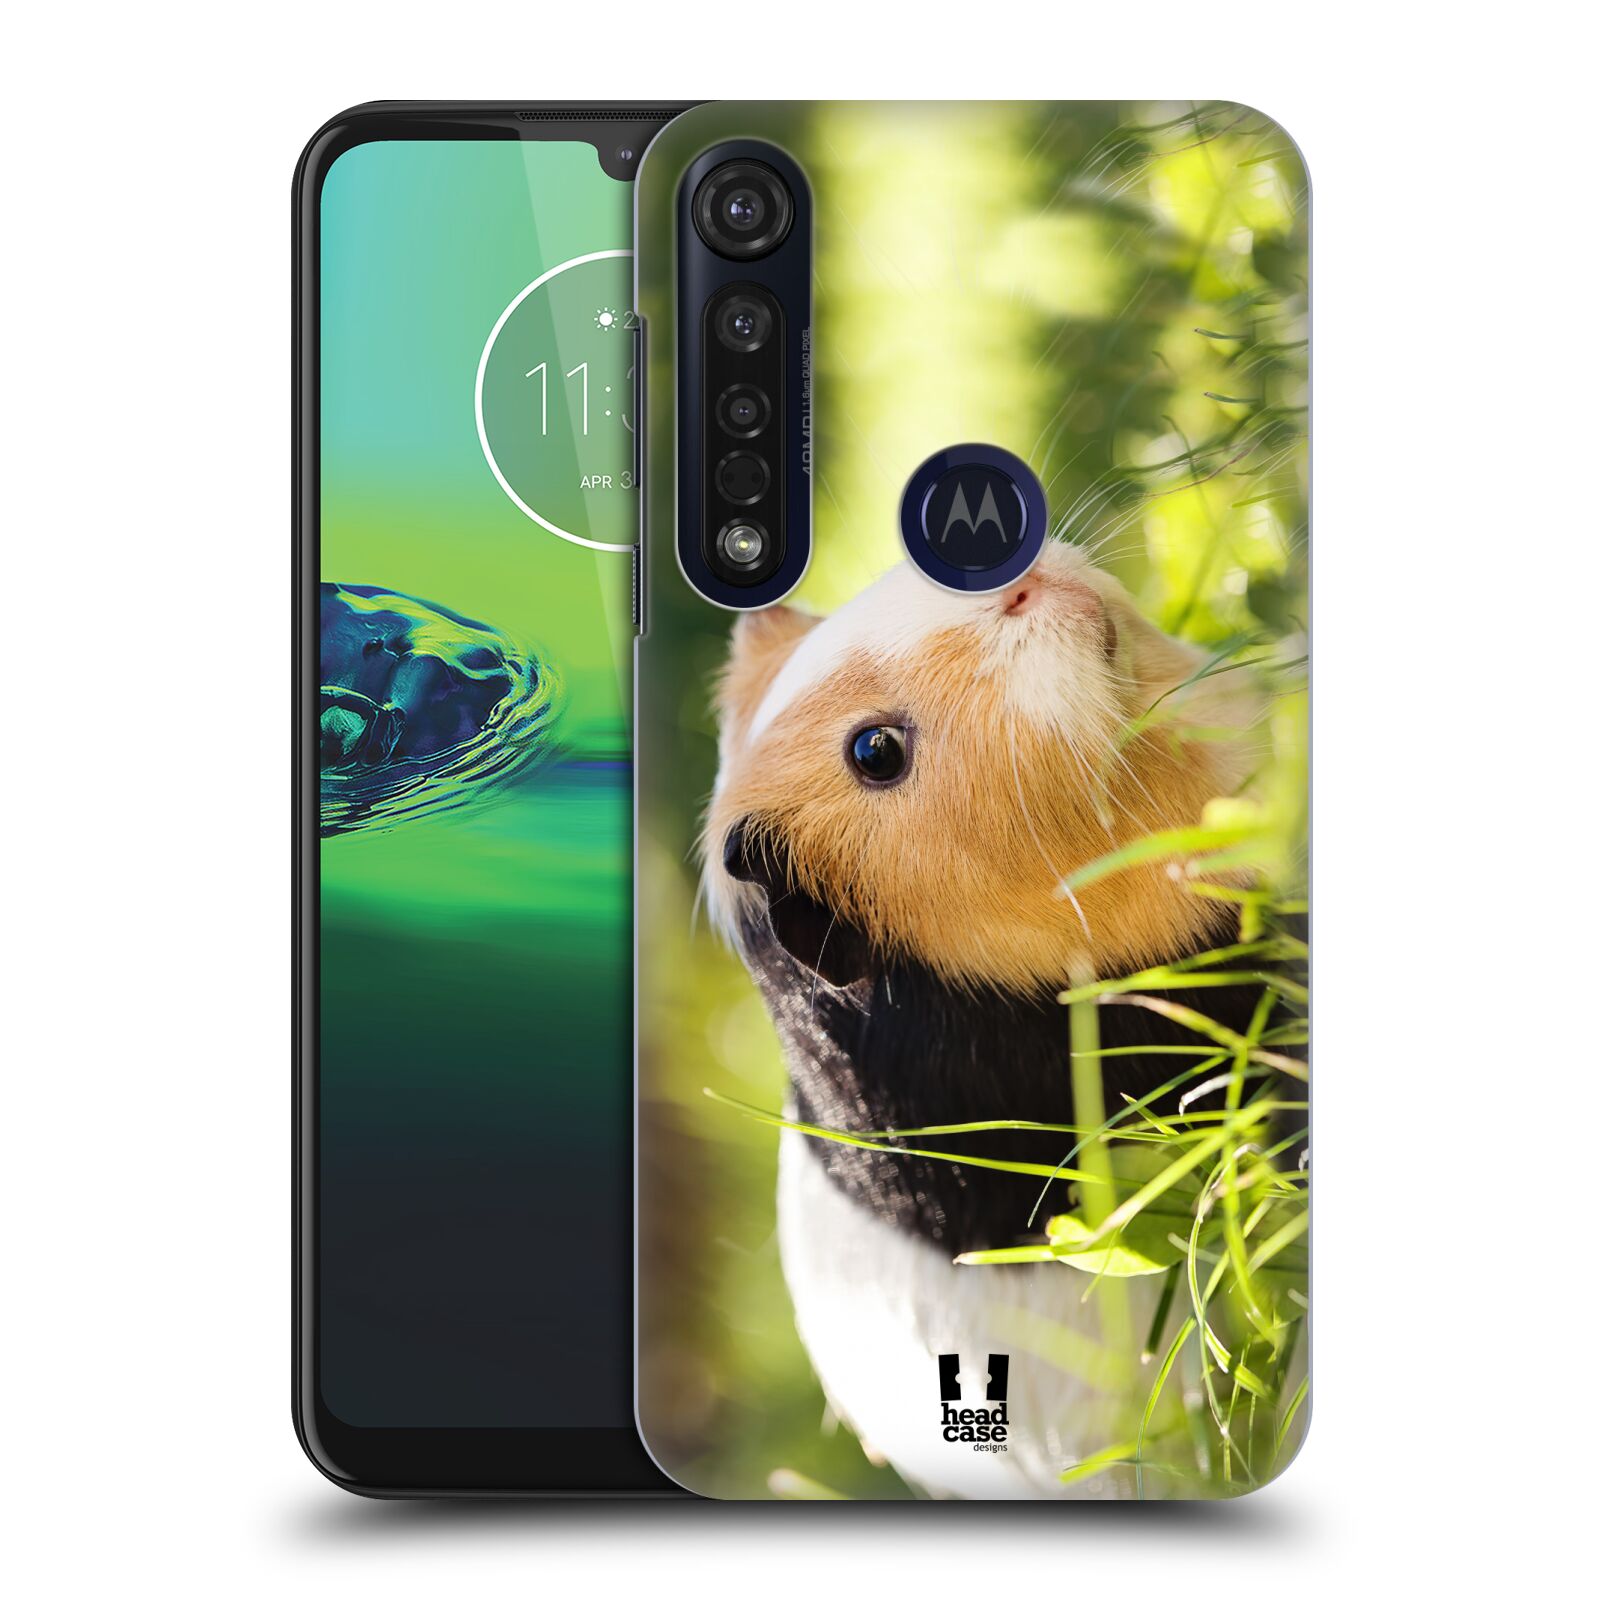 Pouzdro na mobil Motorola Moto G8 PLUS - HEAD CASE - vzor slavná zvířata foto morče